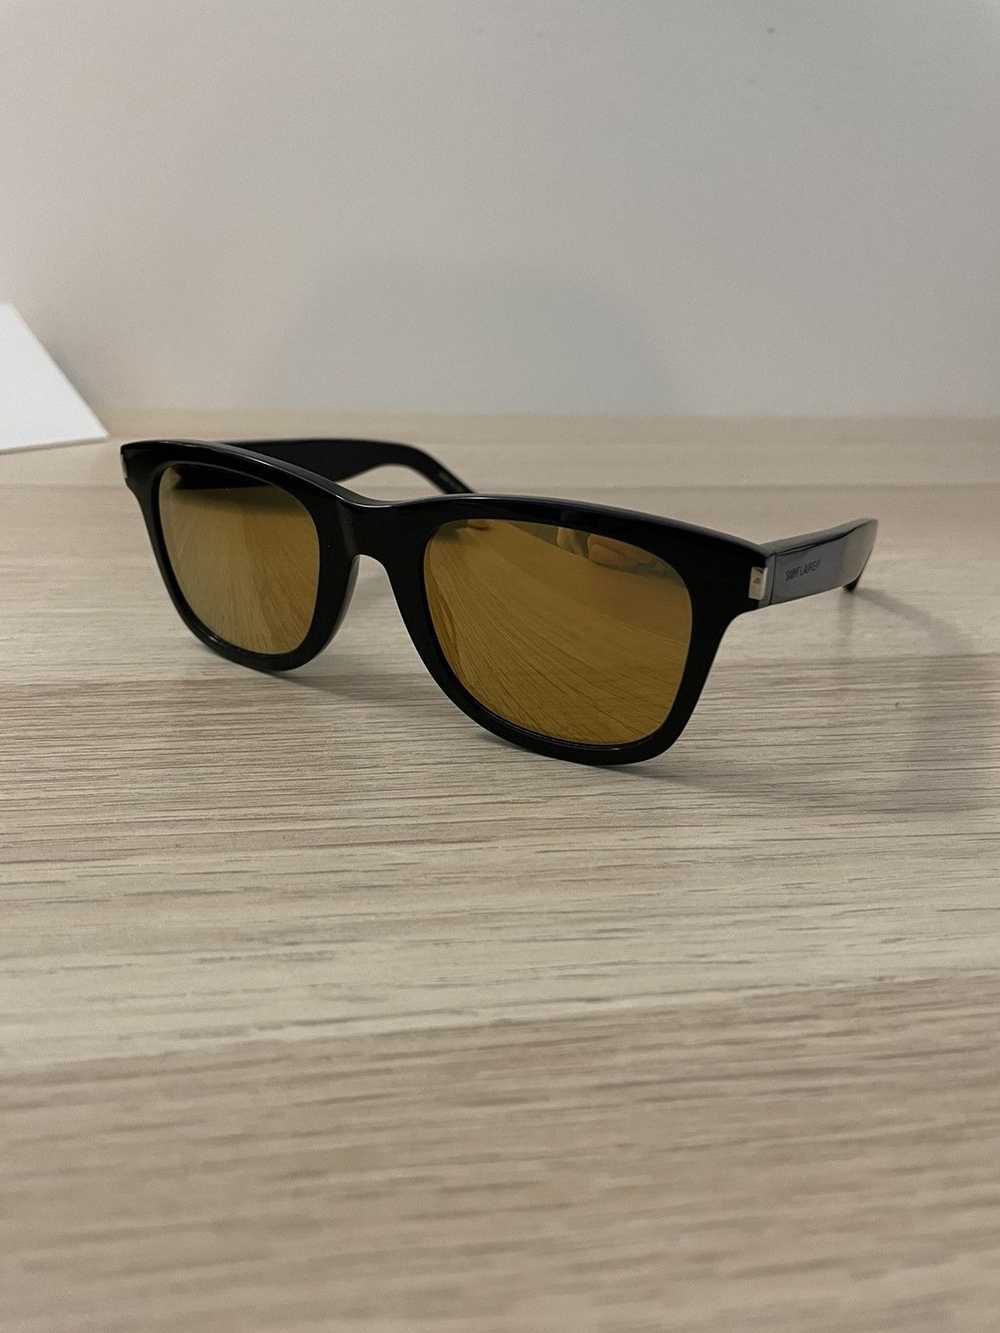 Yves Saint Laurent Saint Laurent Sunglasses - image 6